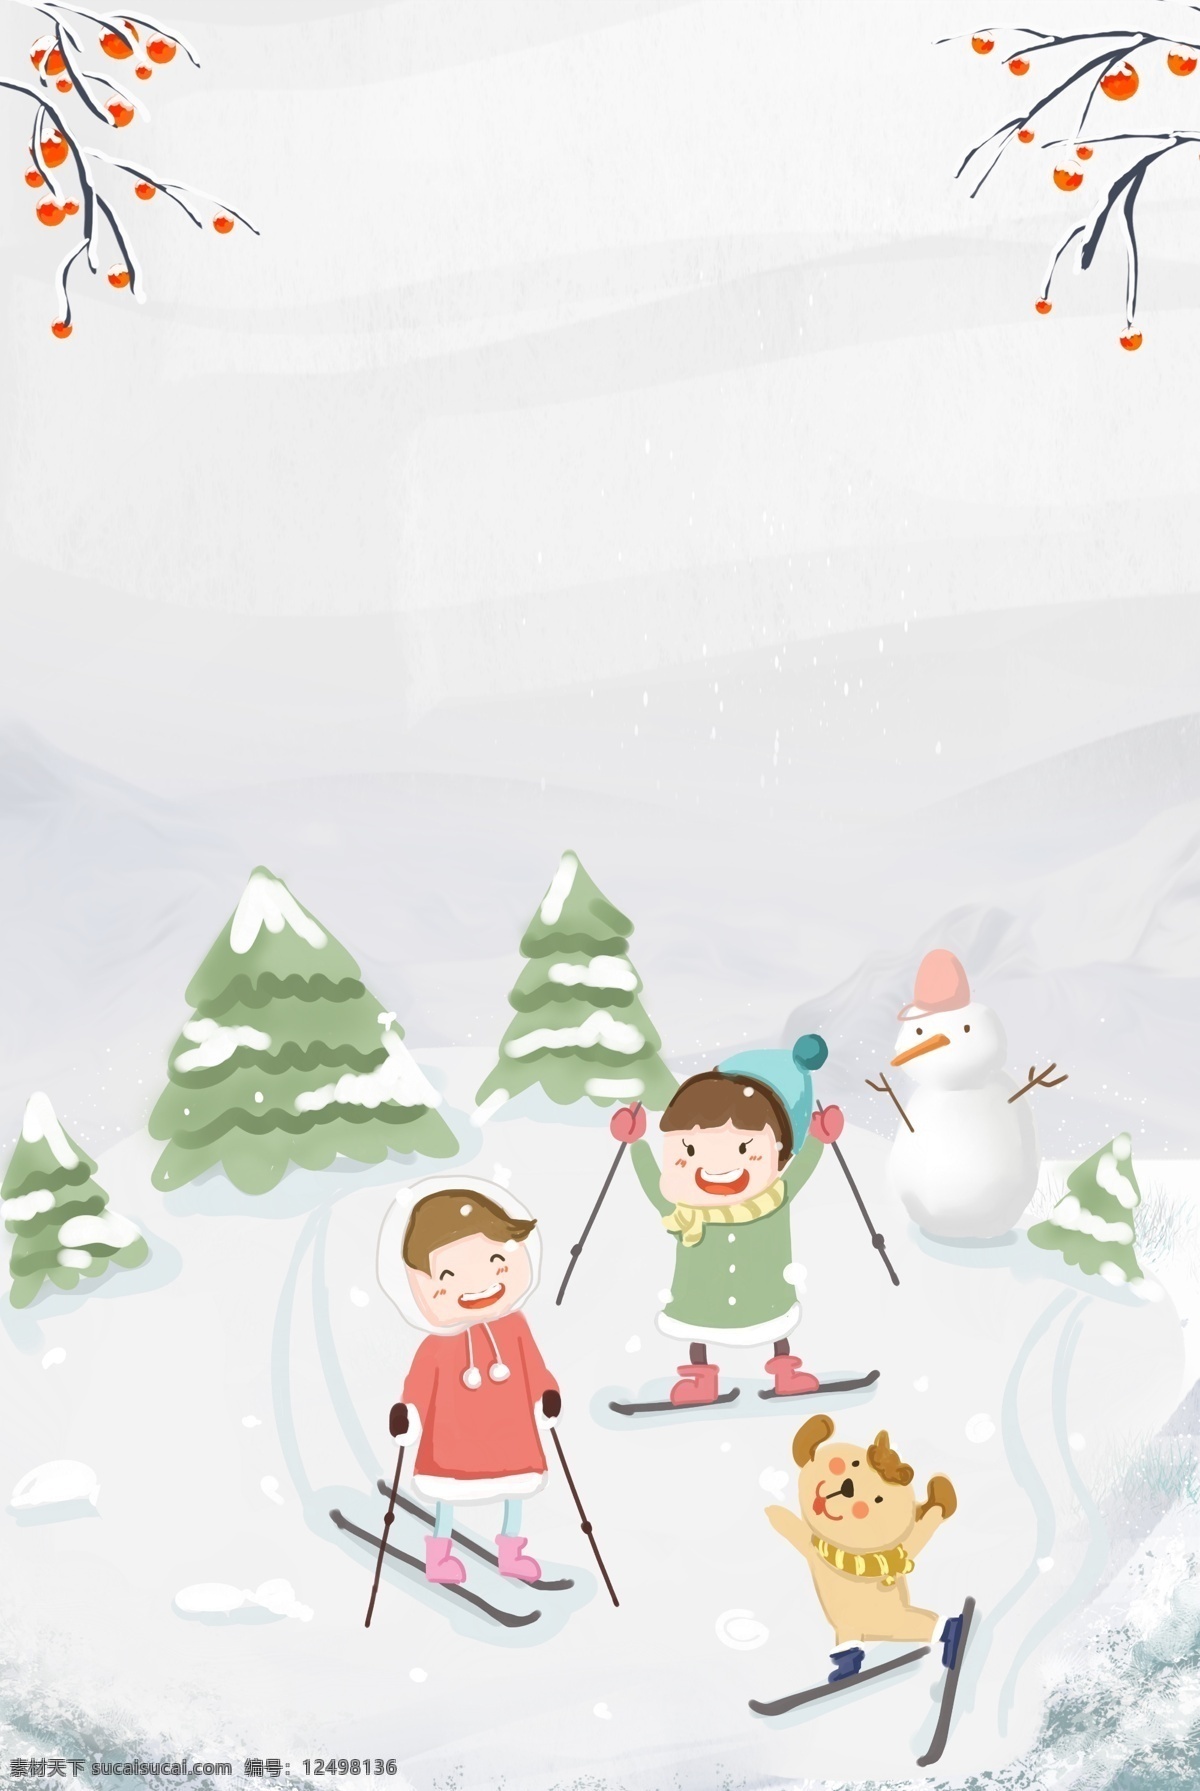 冬令营 滑雪 海报下载 小朋友 树 雪花 海报 背景 积雪雪人 下雪 传统 儿童